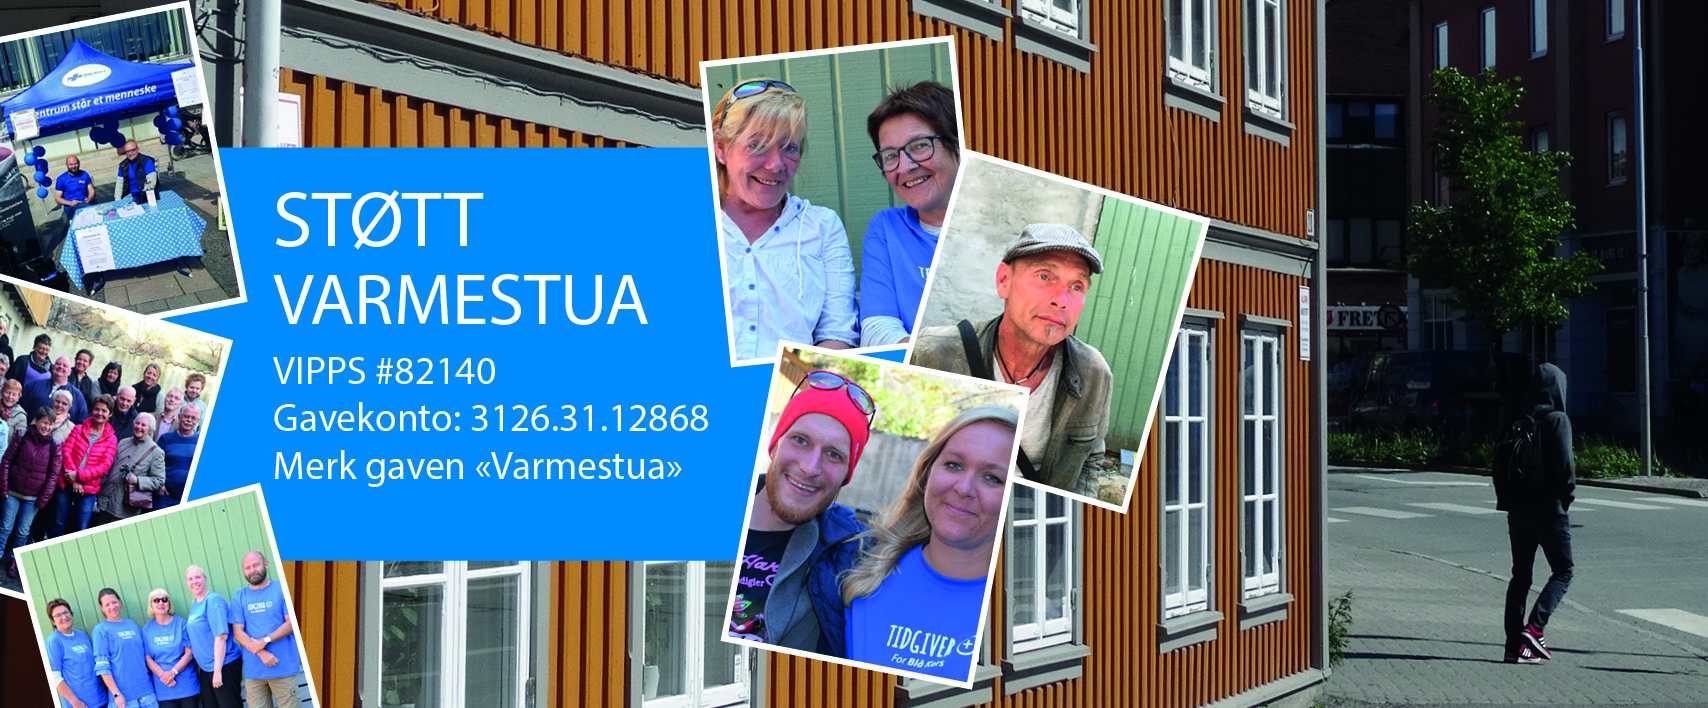 Featured image for “Støtt Varmestua”